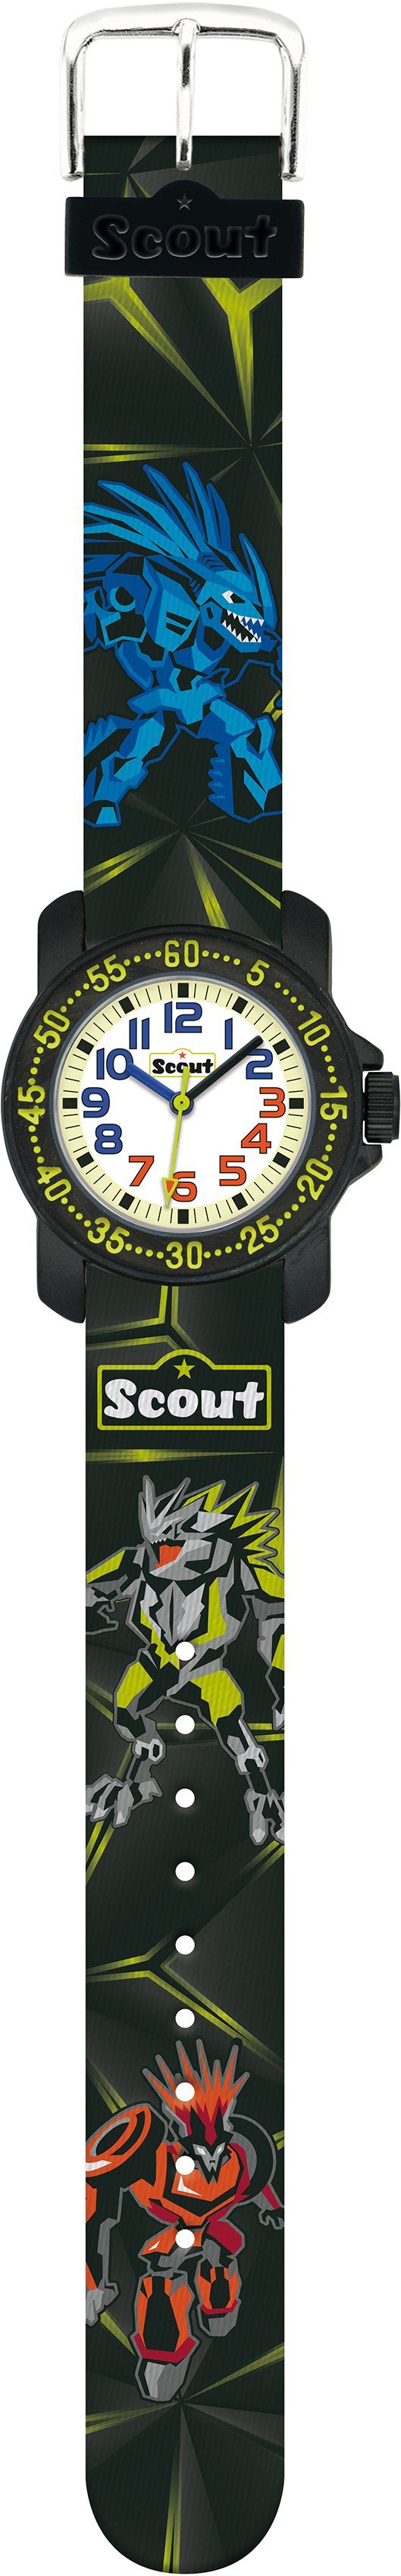 Scout Quarzuhr Action Boys, 280376041, ideal auch als Geschenk | Quarzuhren